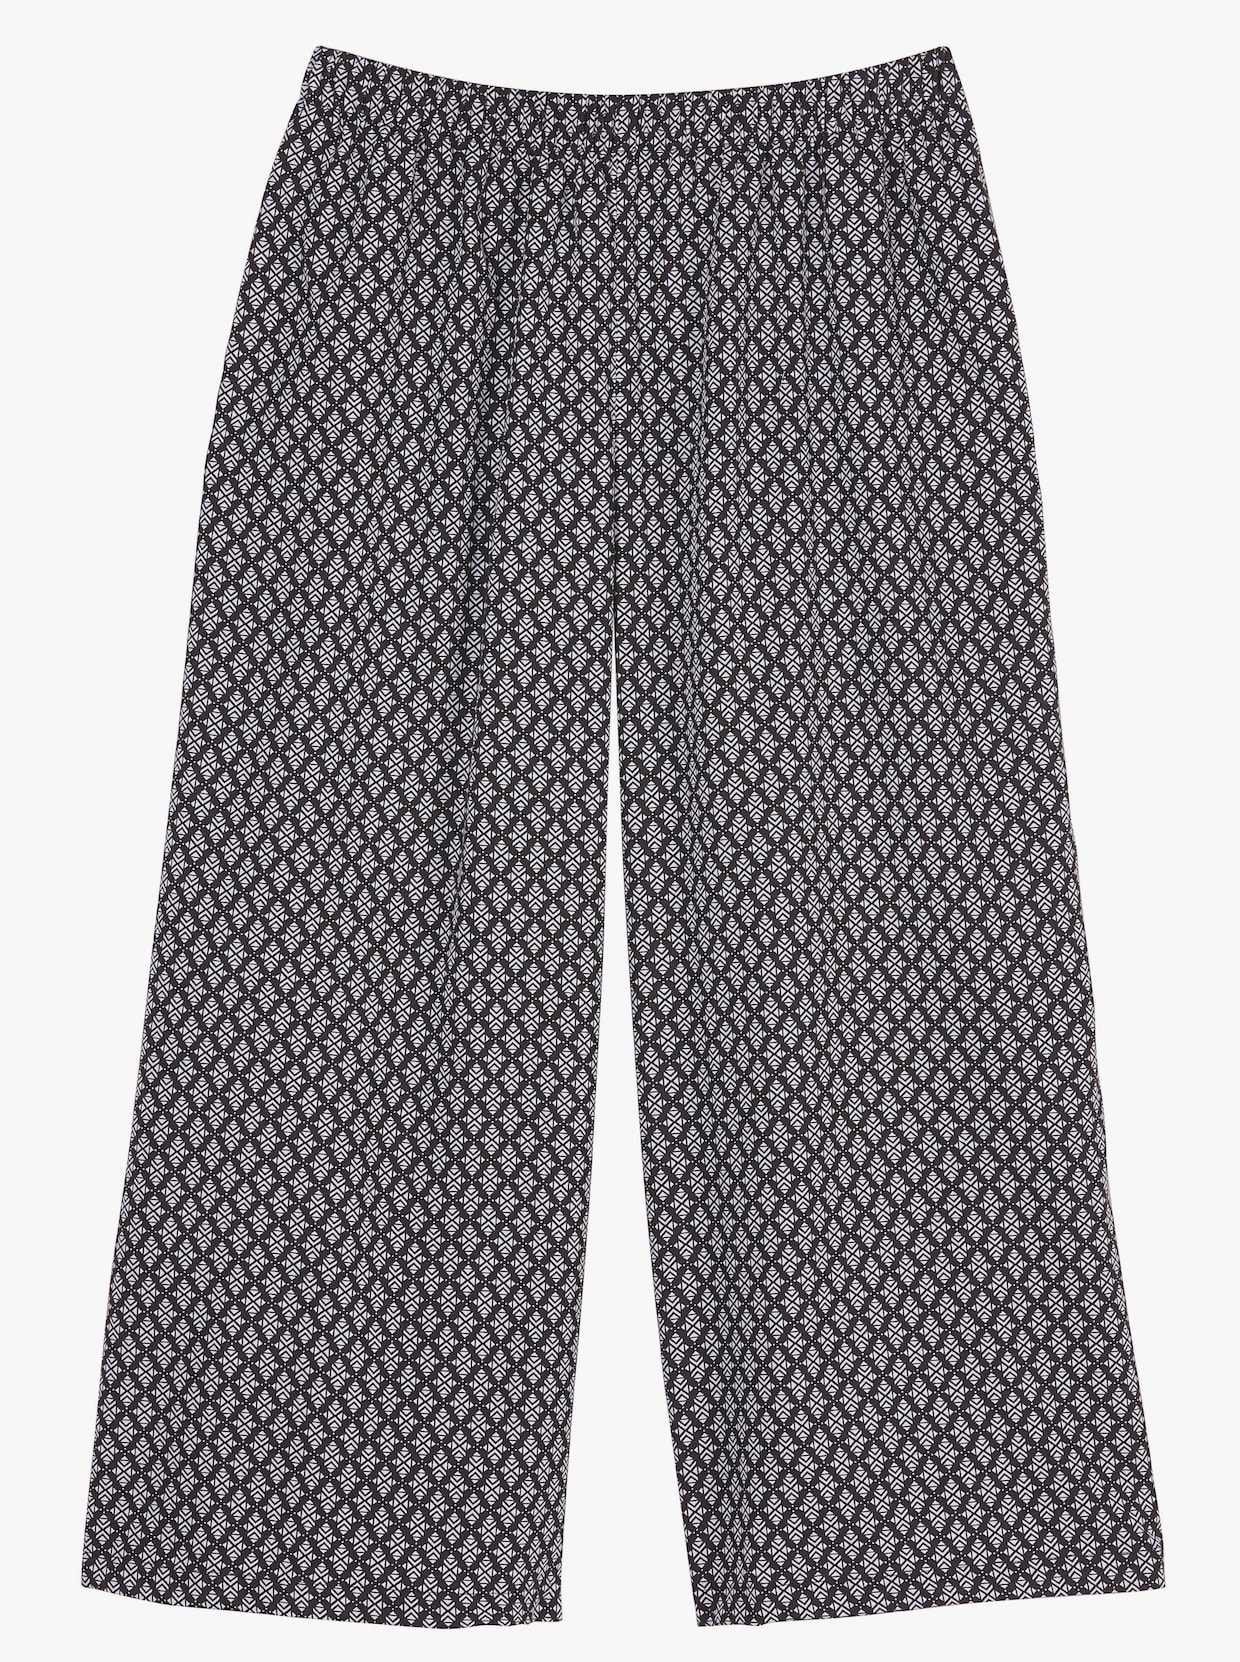 Kalhoty culotte - černá-bílá-kostka